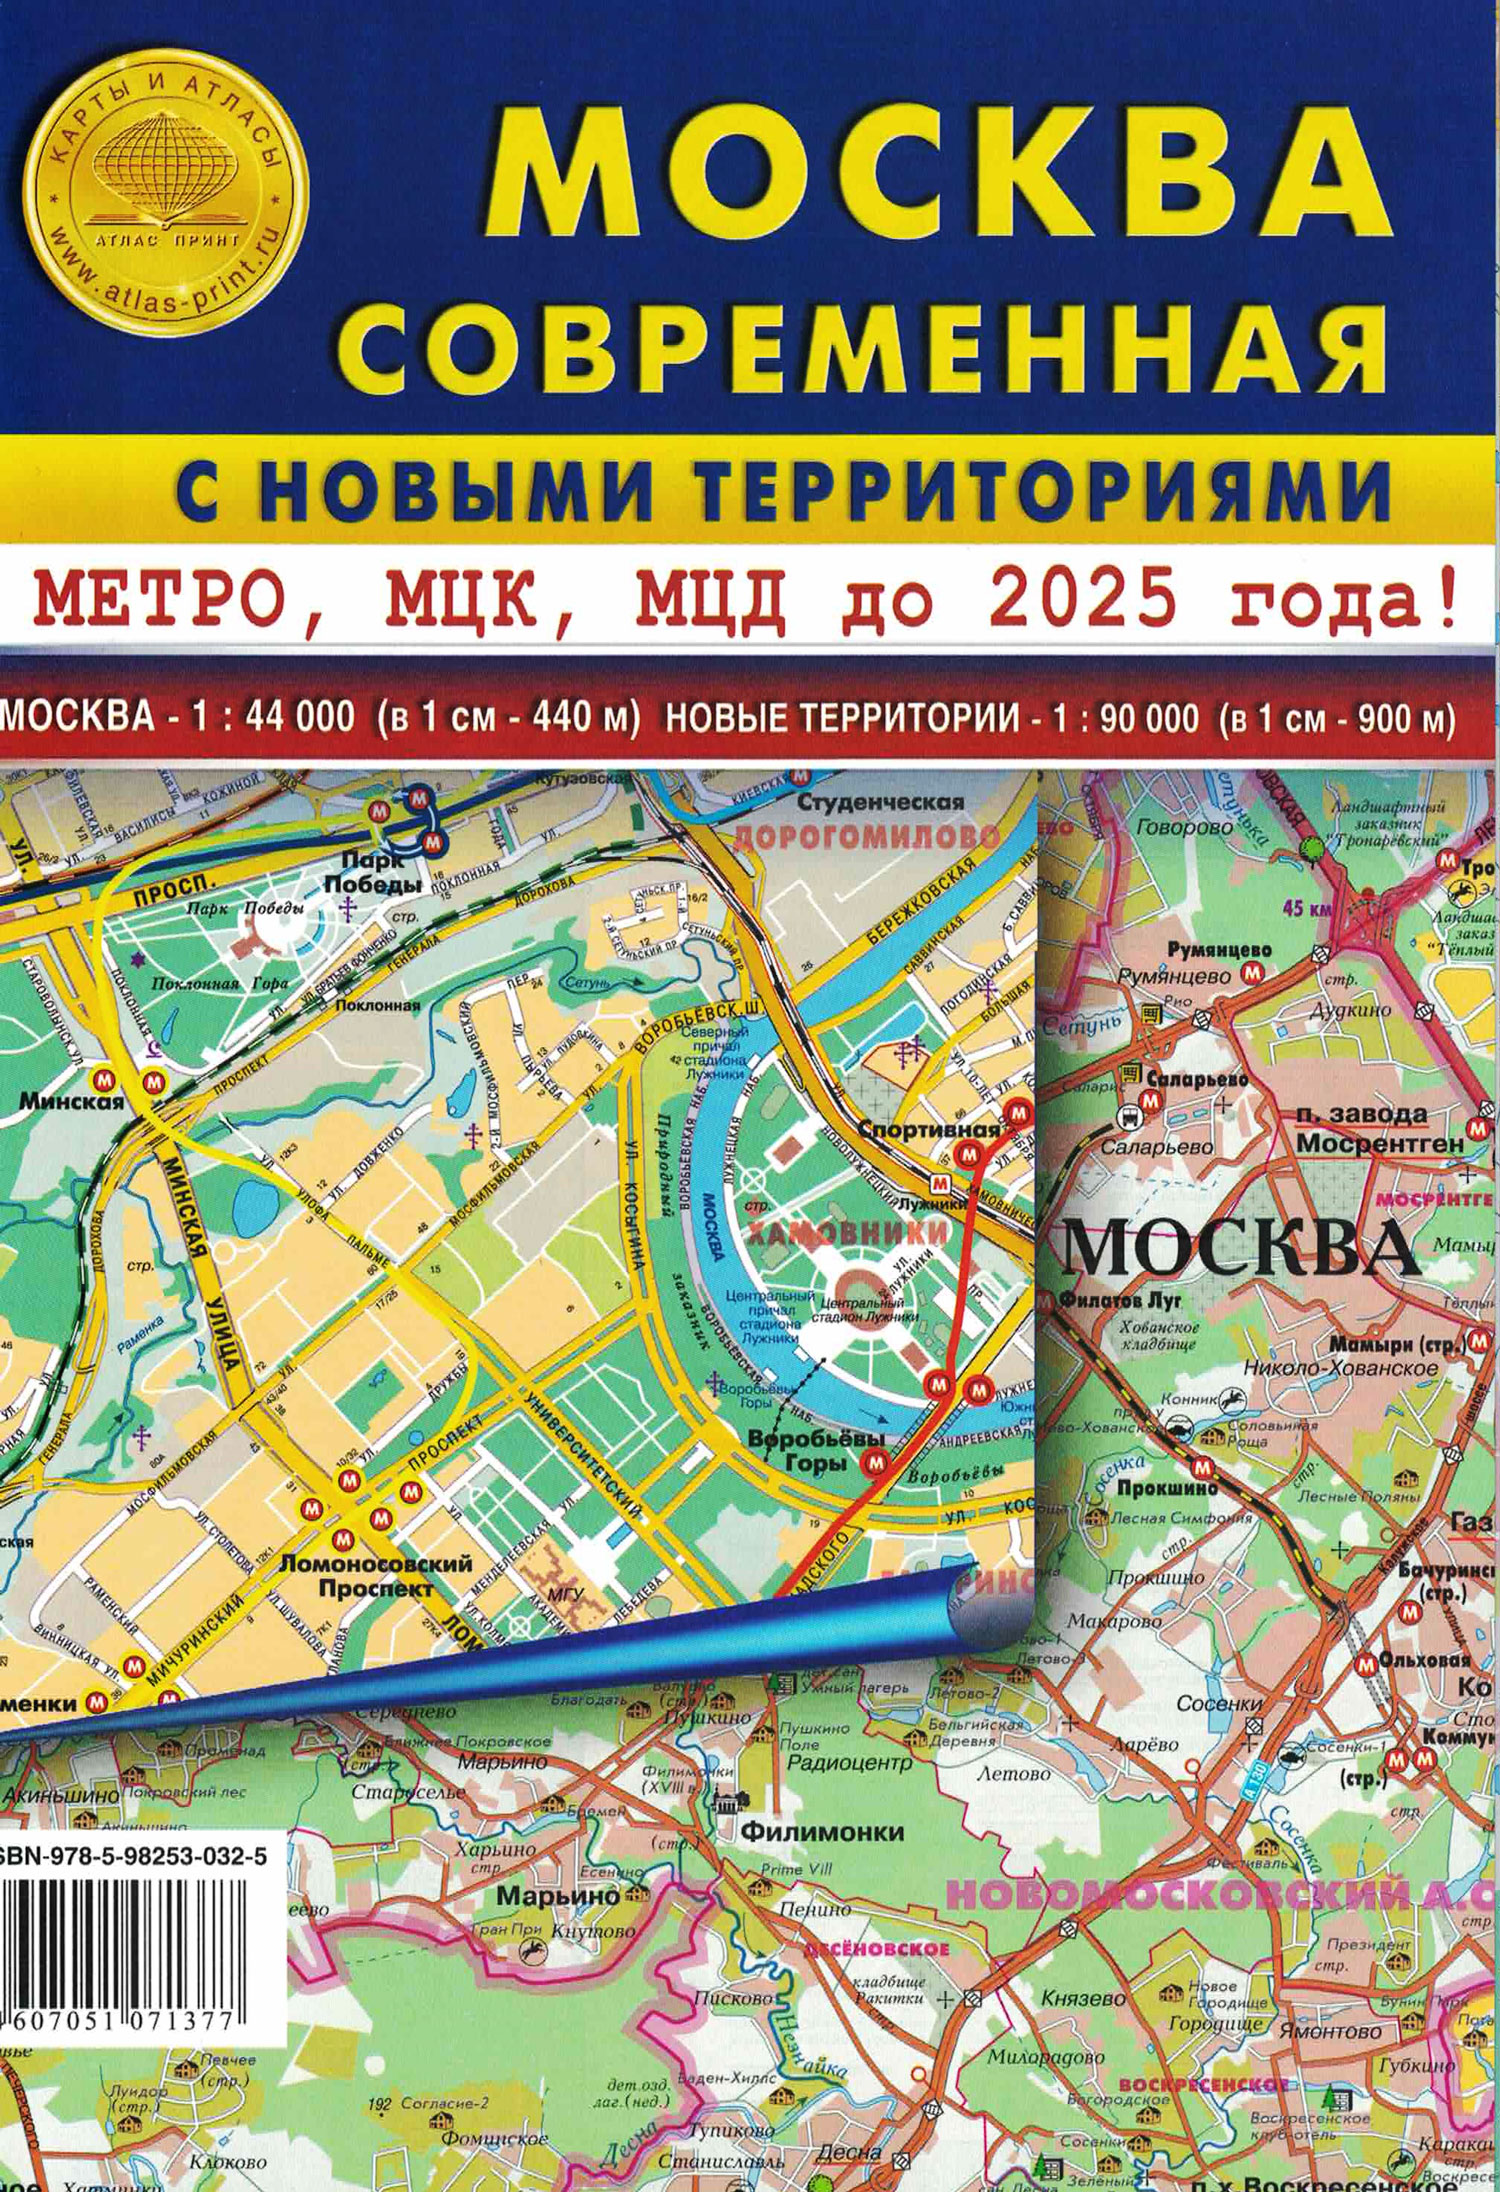 карта складная москвы с новыми территориями Карта складная Москва современная с новыми территориями. Масштаб 1:44 000, новые территории 1:90 000